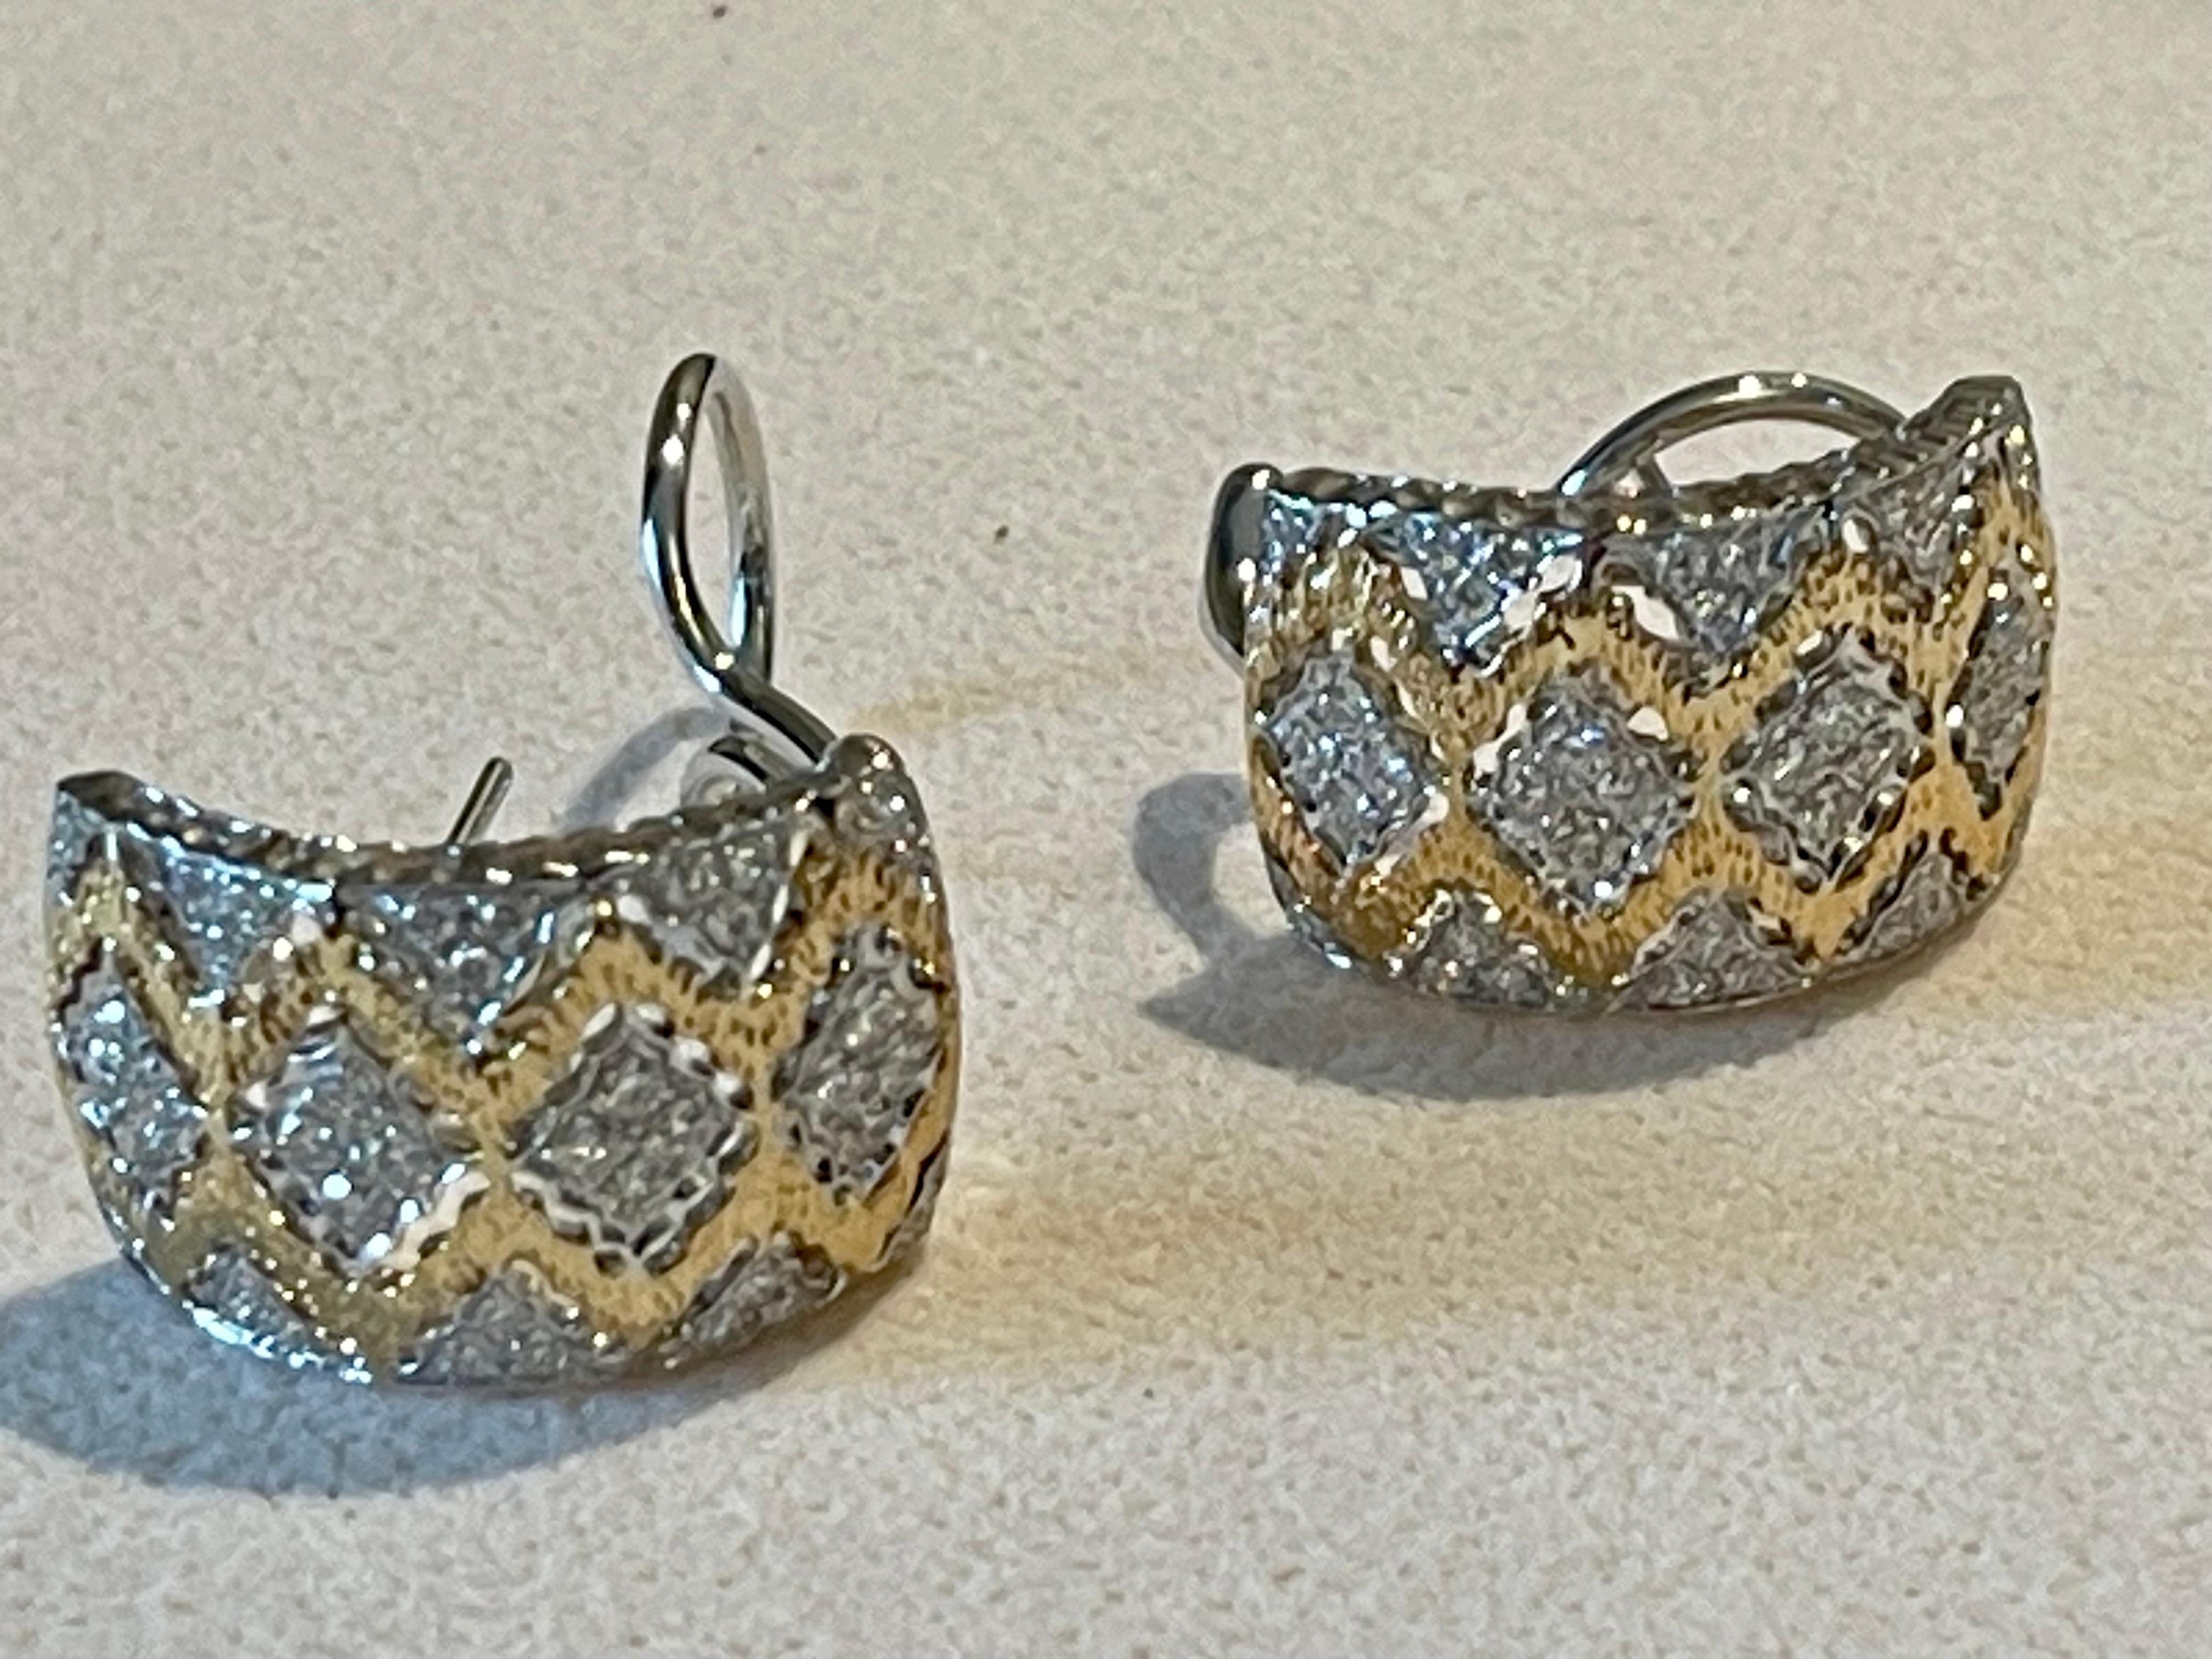 Paire de bagues bicolores en or jaune 18 K et en or blanc 18 K.  Boucles d'oreilles Huggies avec de jolis filigranes ajourés entre les sections d'or en forme de diamant.
Chaque section est ornée d'un diamant taillé en brillant au centre. L'or jaune